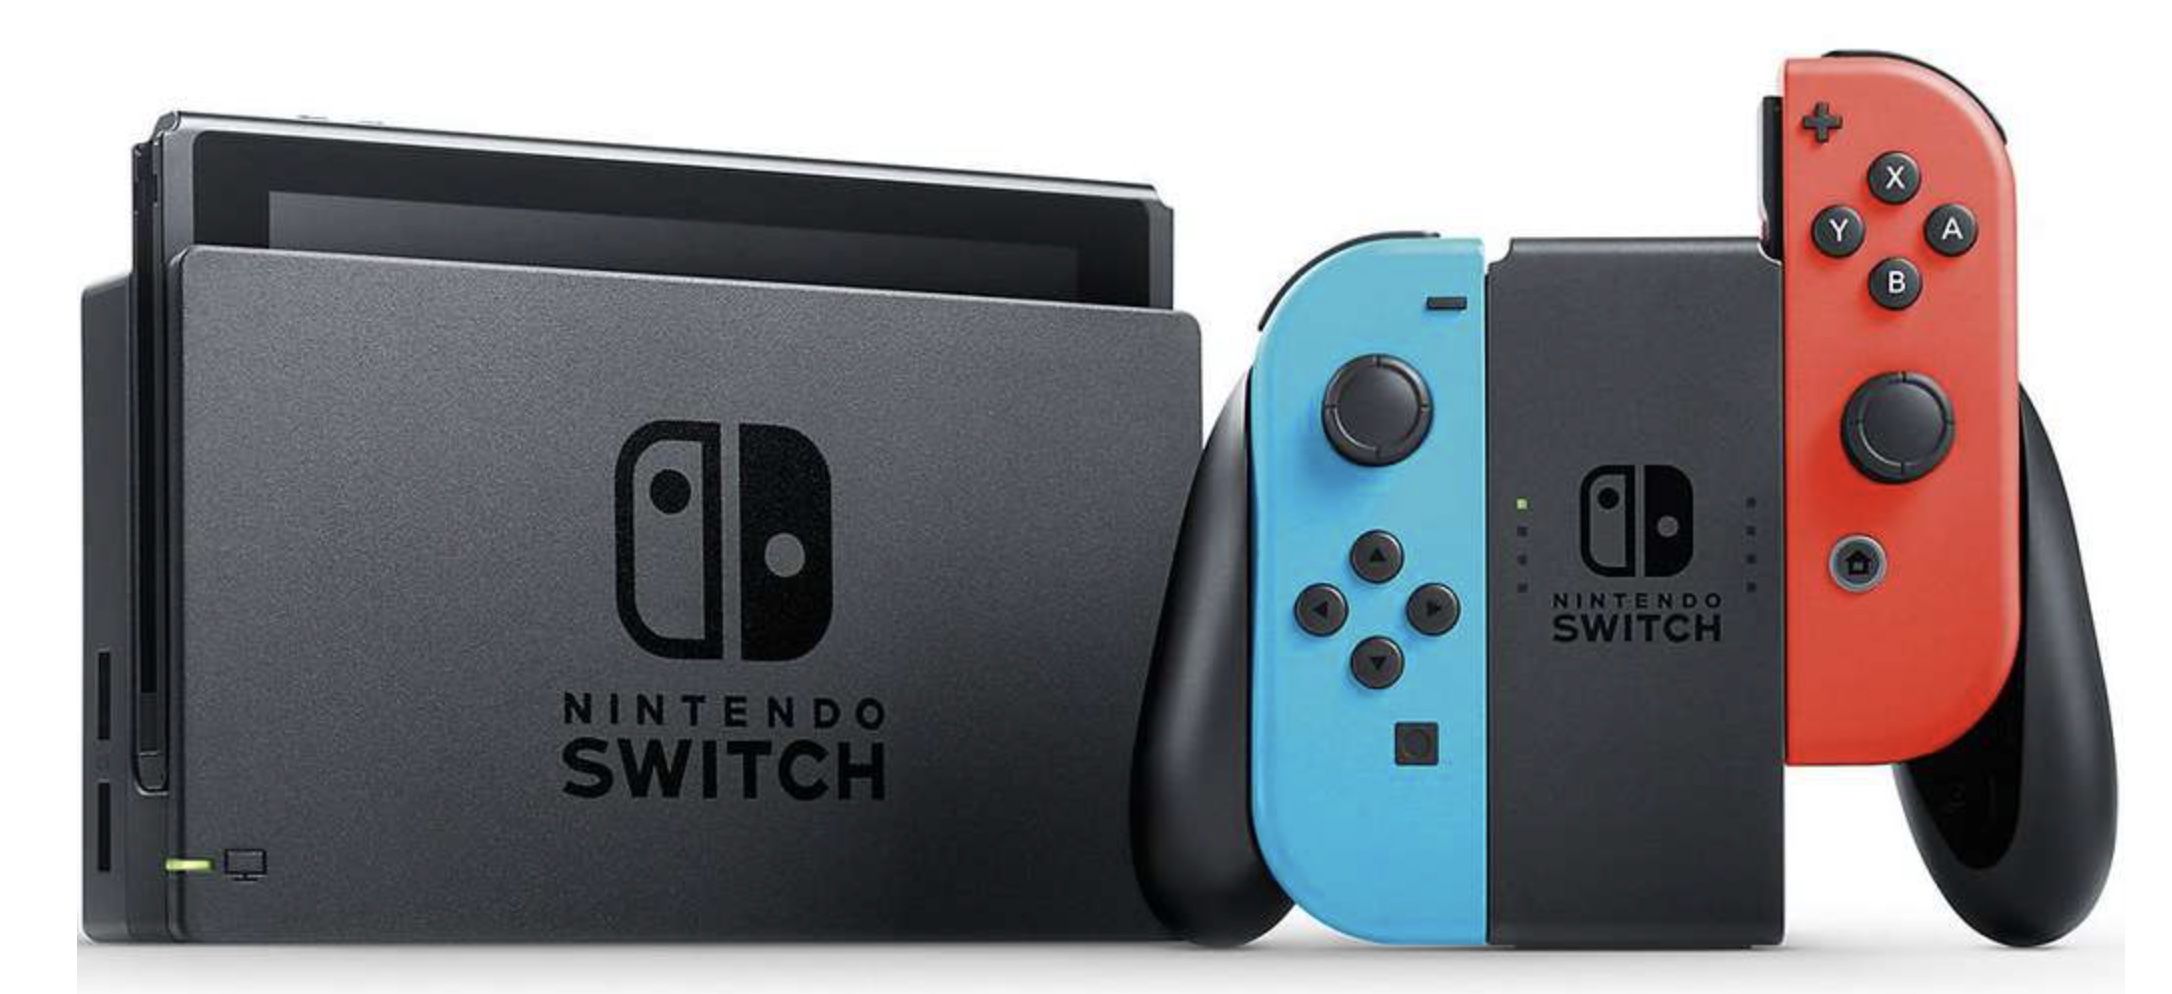 Drillisch Kunden: Nintendo Switch Konsole für 149€   neuwertig inkl. Zubehör & Garantie